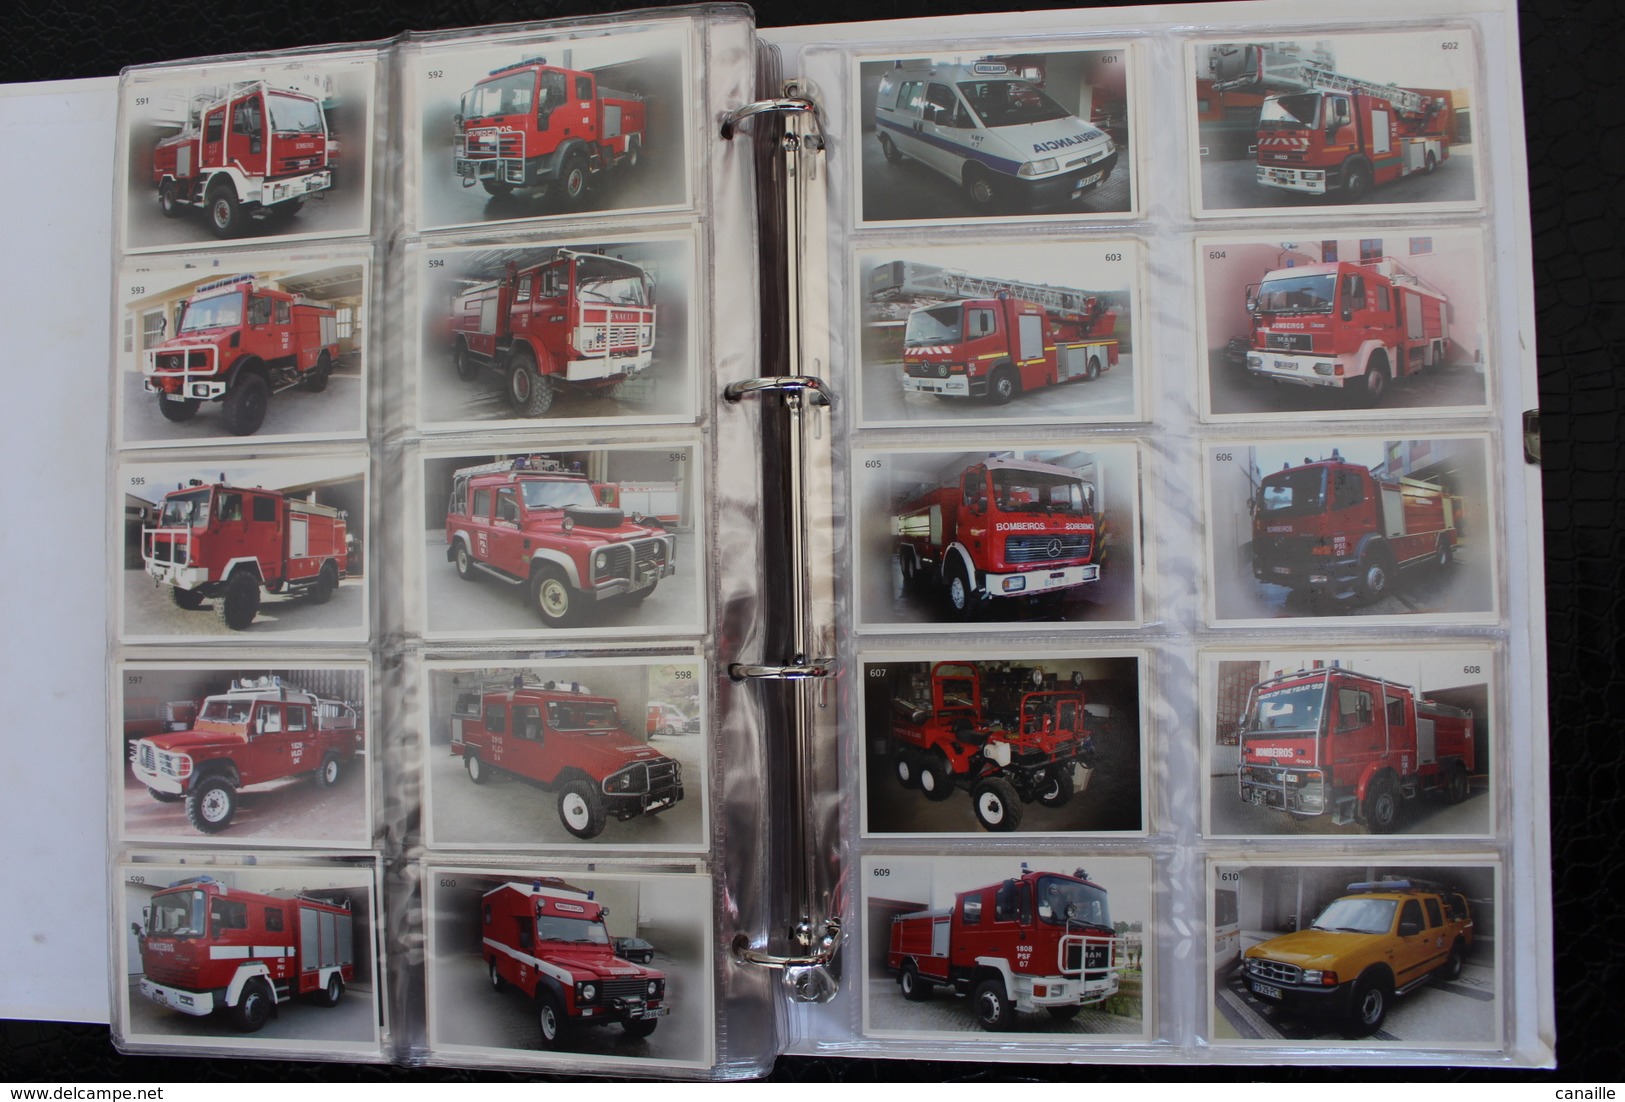 639 Photos de camions de pompiers du Portugal - Album ​complet / Coleccao de Viaturas dos Bombeiros Portugueses /2004